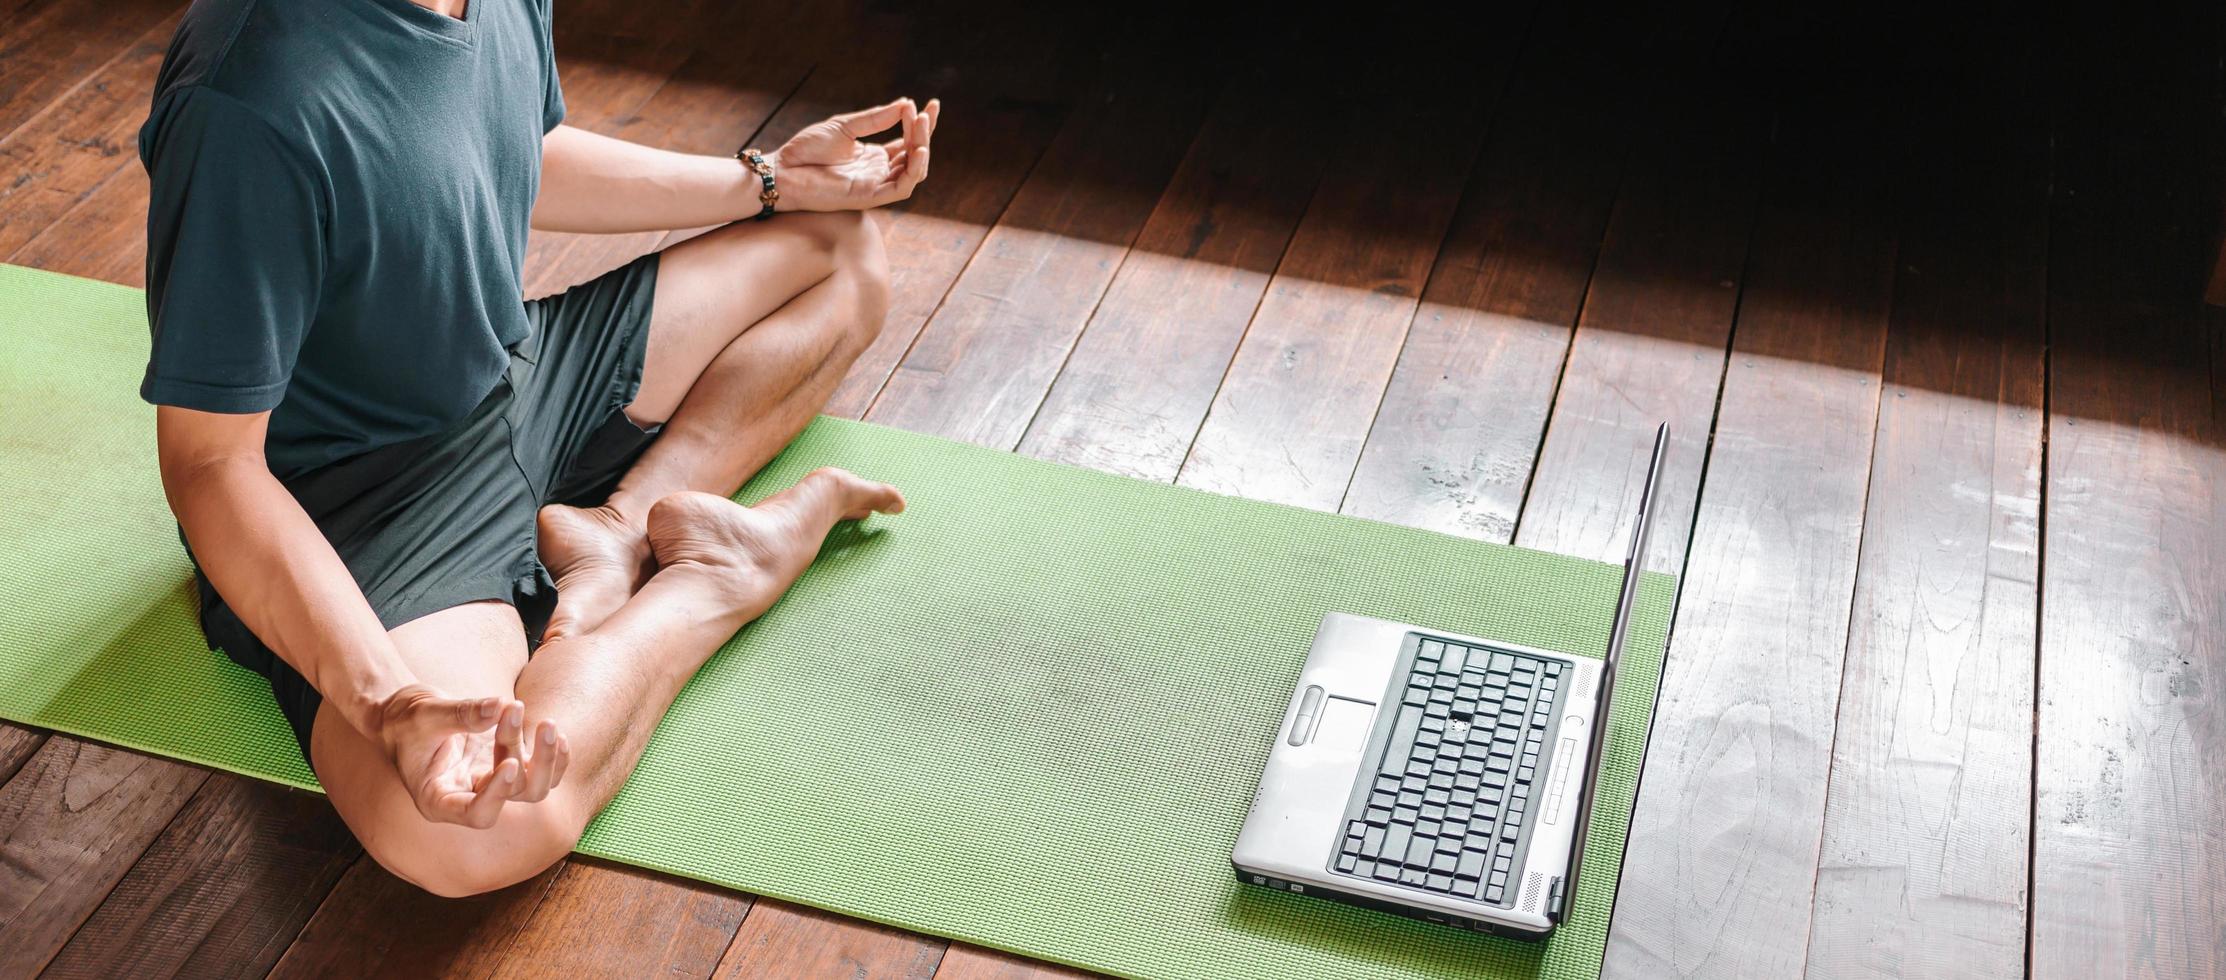 jeune homme asiatique entraîneur vidéo internet formation en ligne instructeur de yoga écran d'ordinateur portable moderne méditer sukhasana posture se détendre respirer siège facile pose gym mode de vie sain à la maison concept. photo